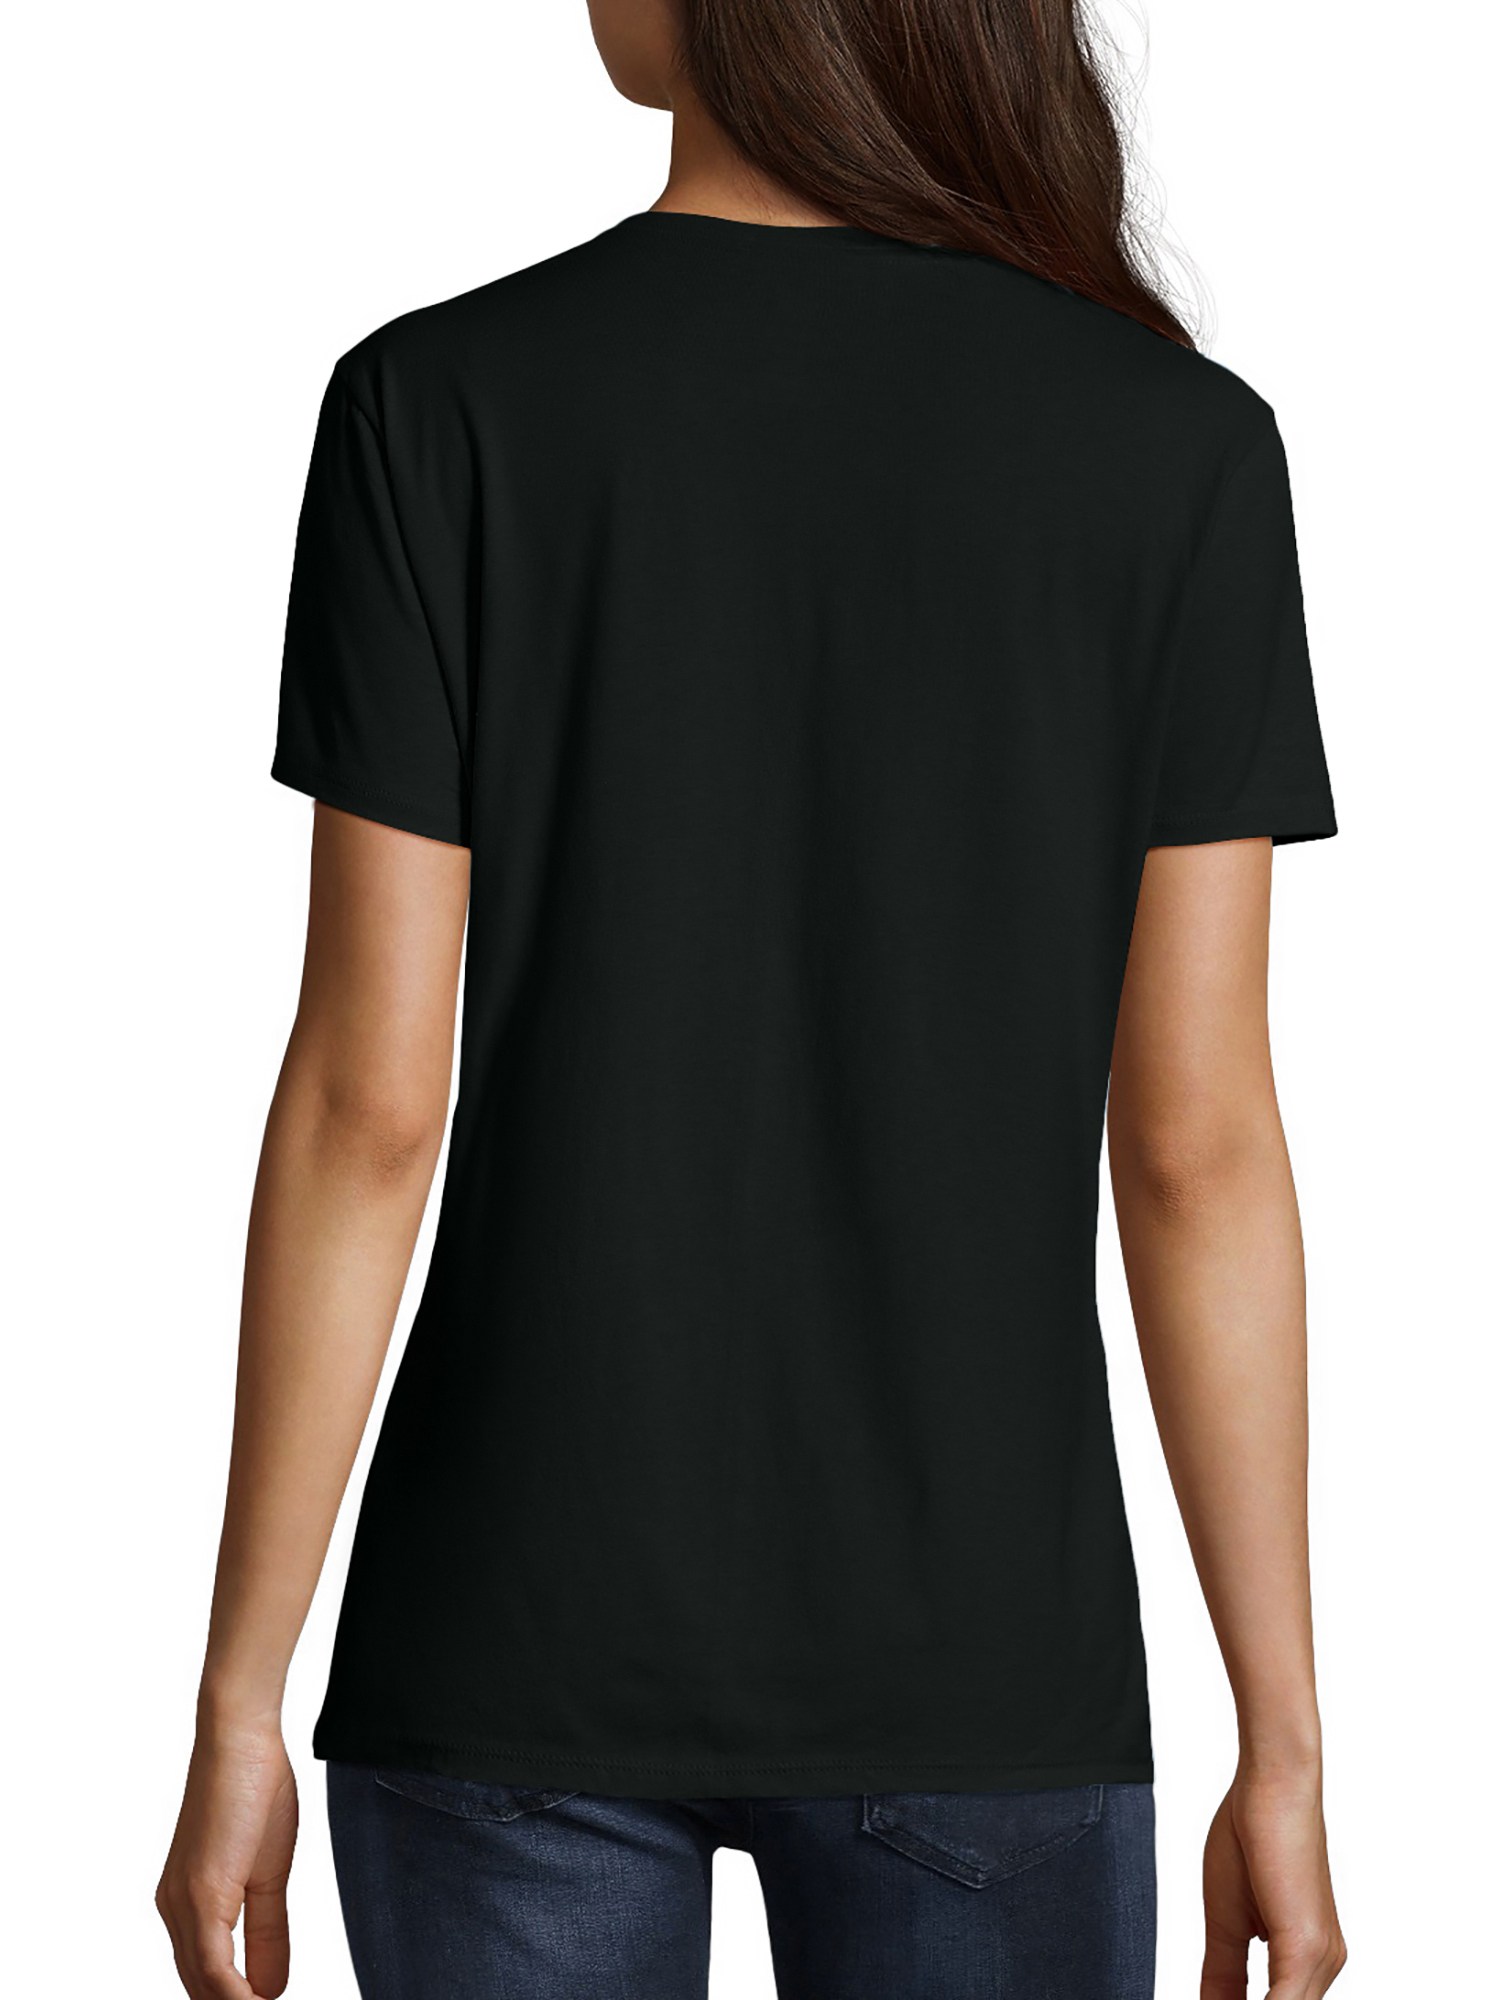 Hanes Women's Nano-T V-Neck T-Shirt - image 5 of 5